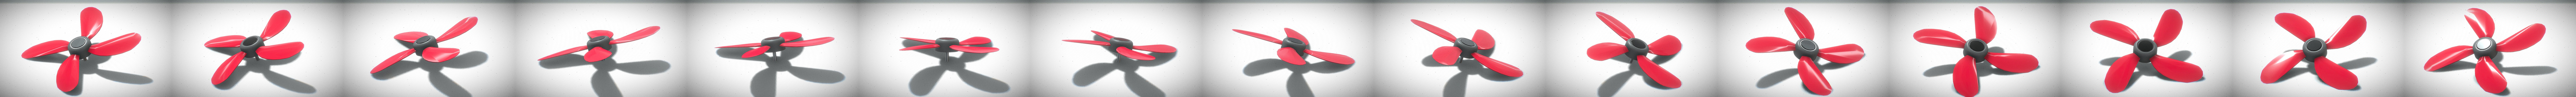 Free 3D file Wind Propeller For Kids V2 / Rüzgar Gülü・3D